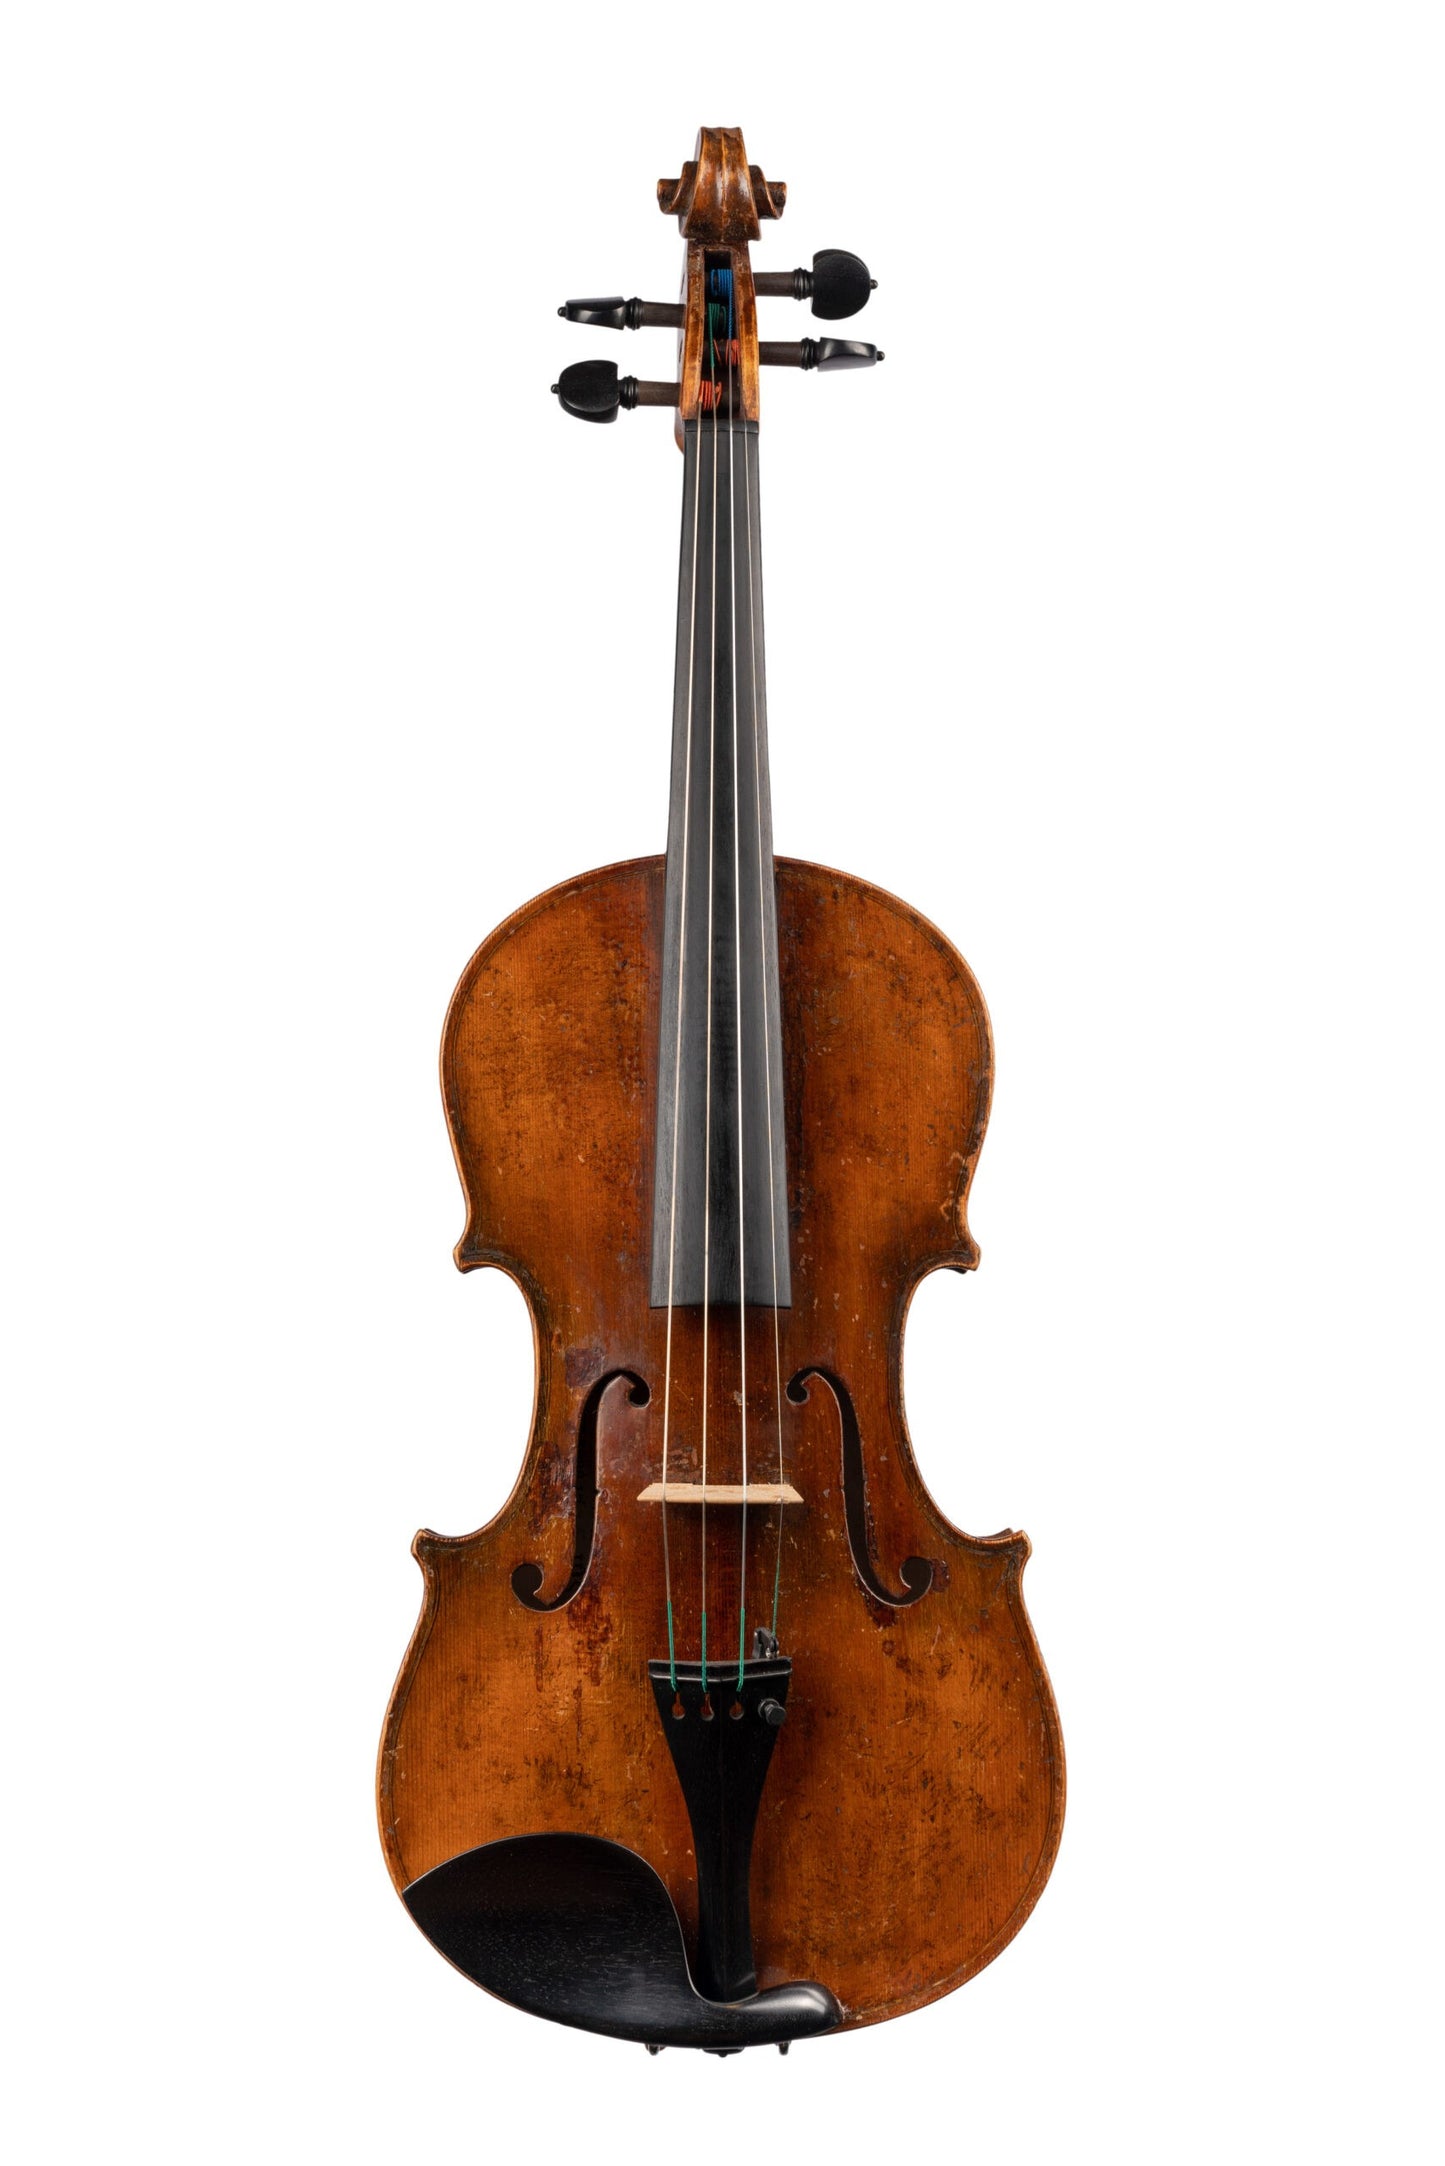 German Violin, Labelled Joseph Guarnerius, GE-153